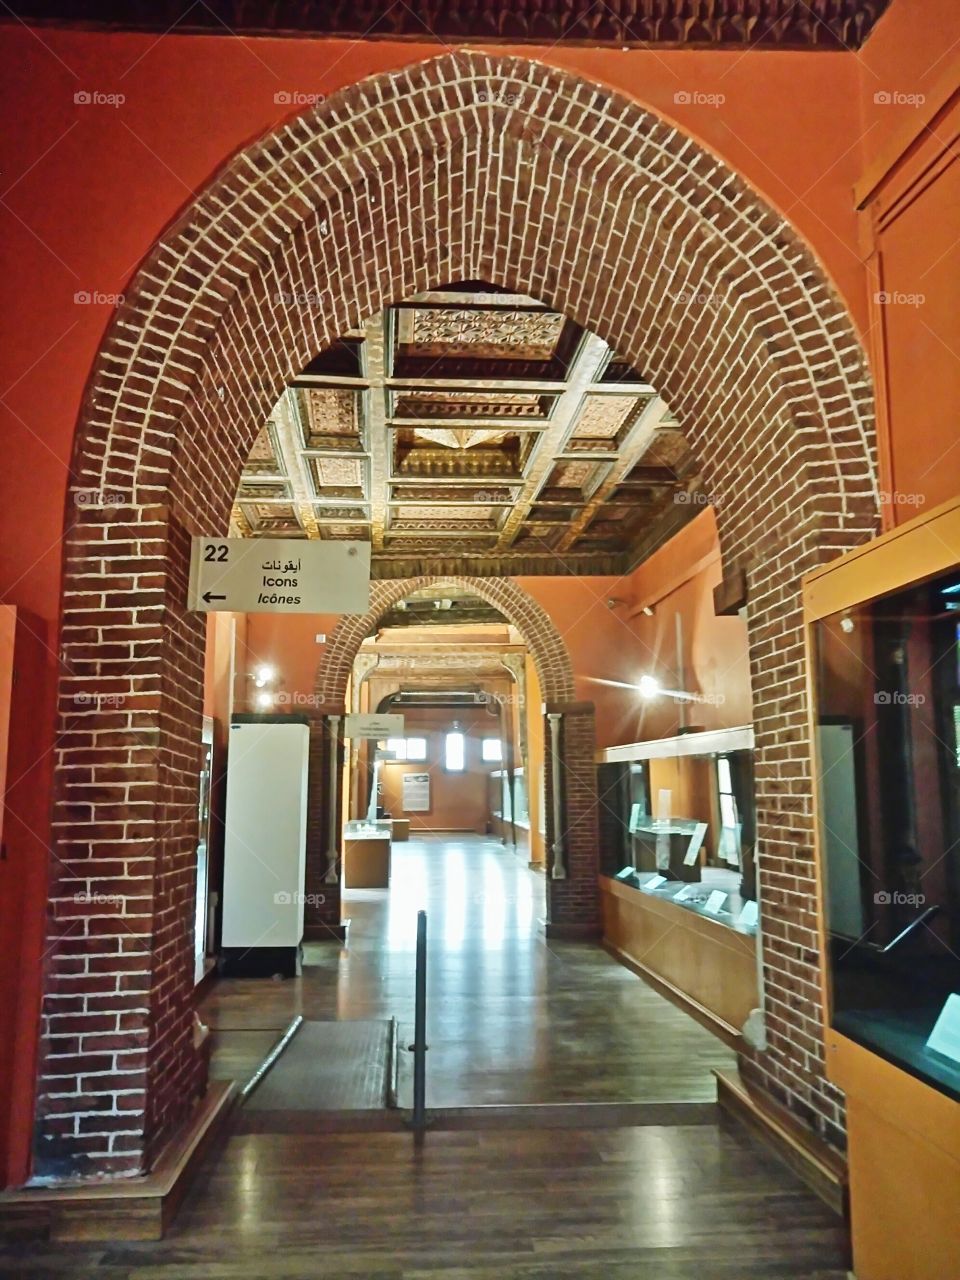 coptic museum in Egypt